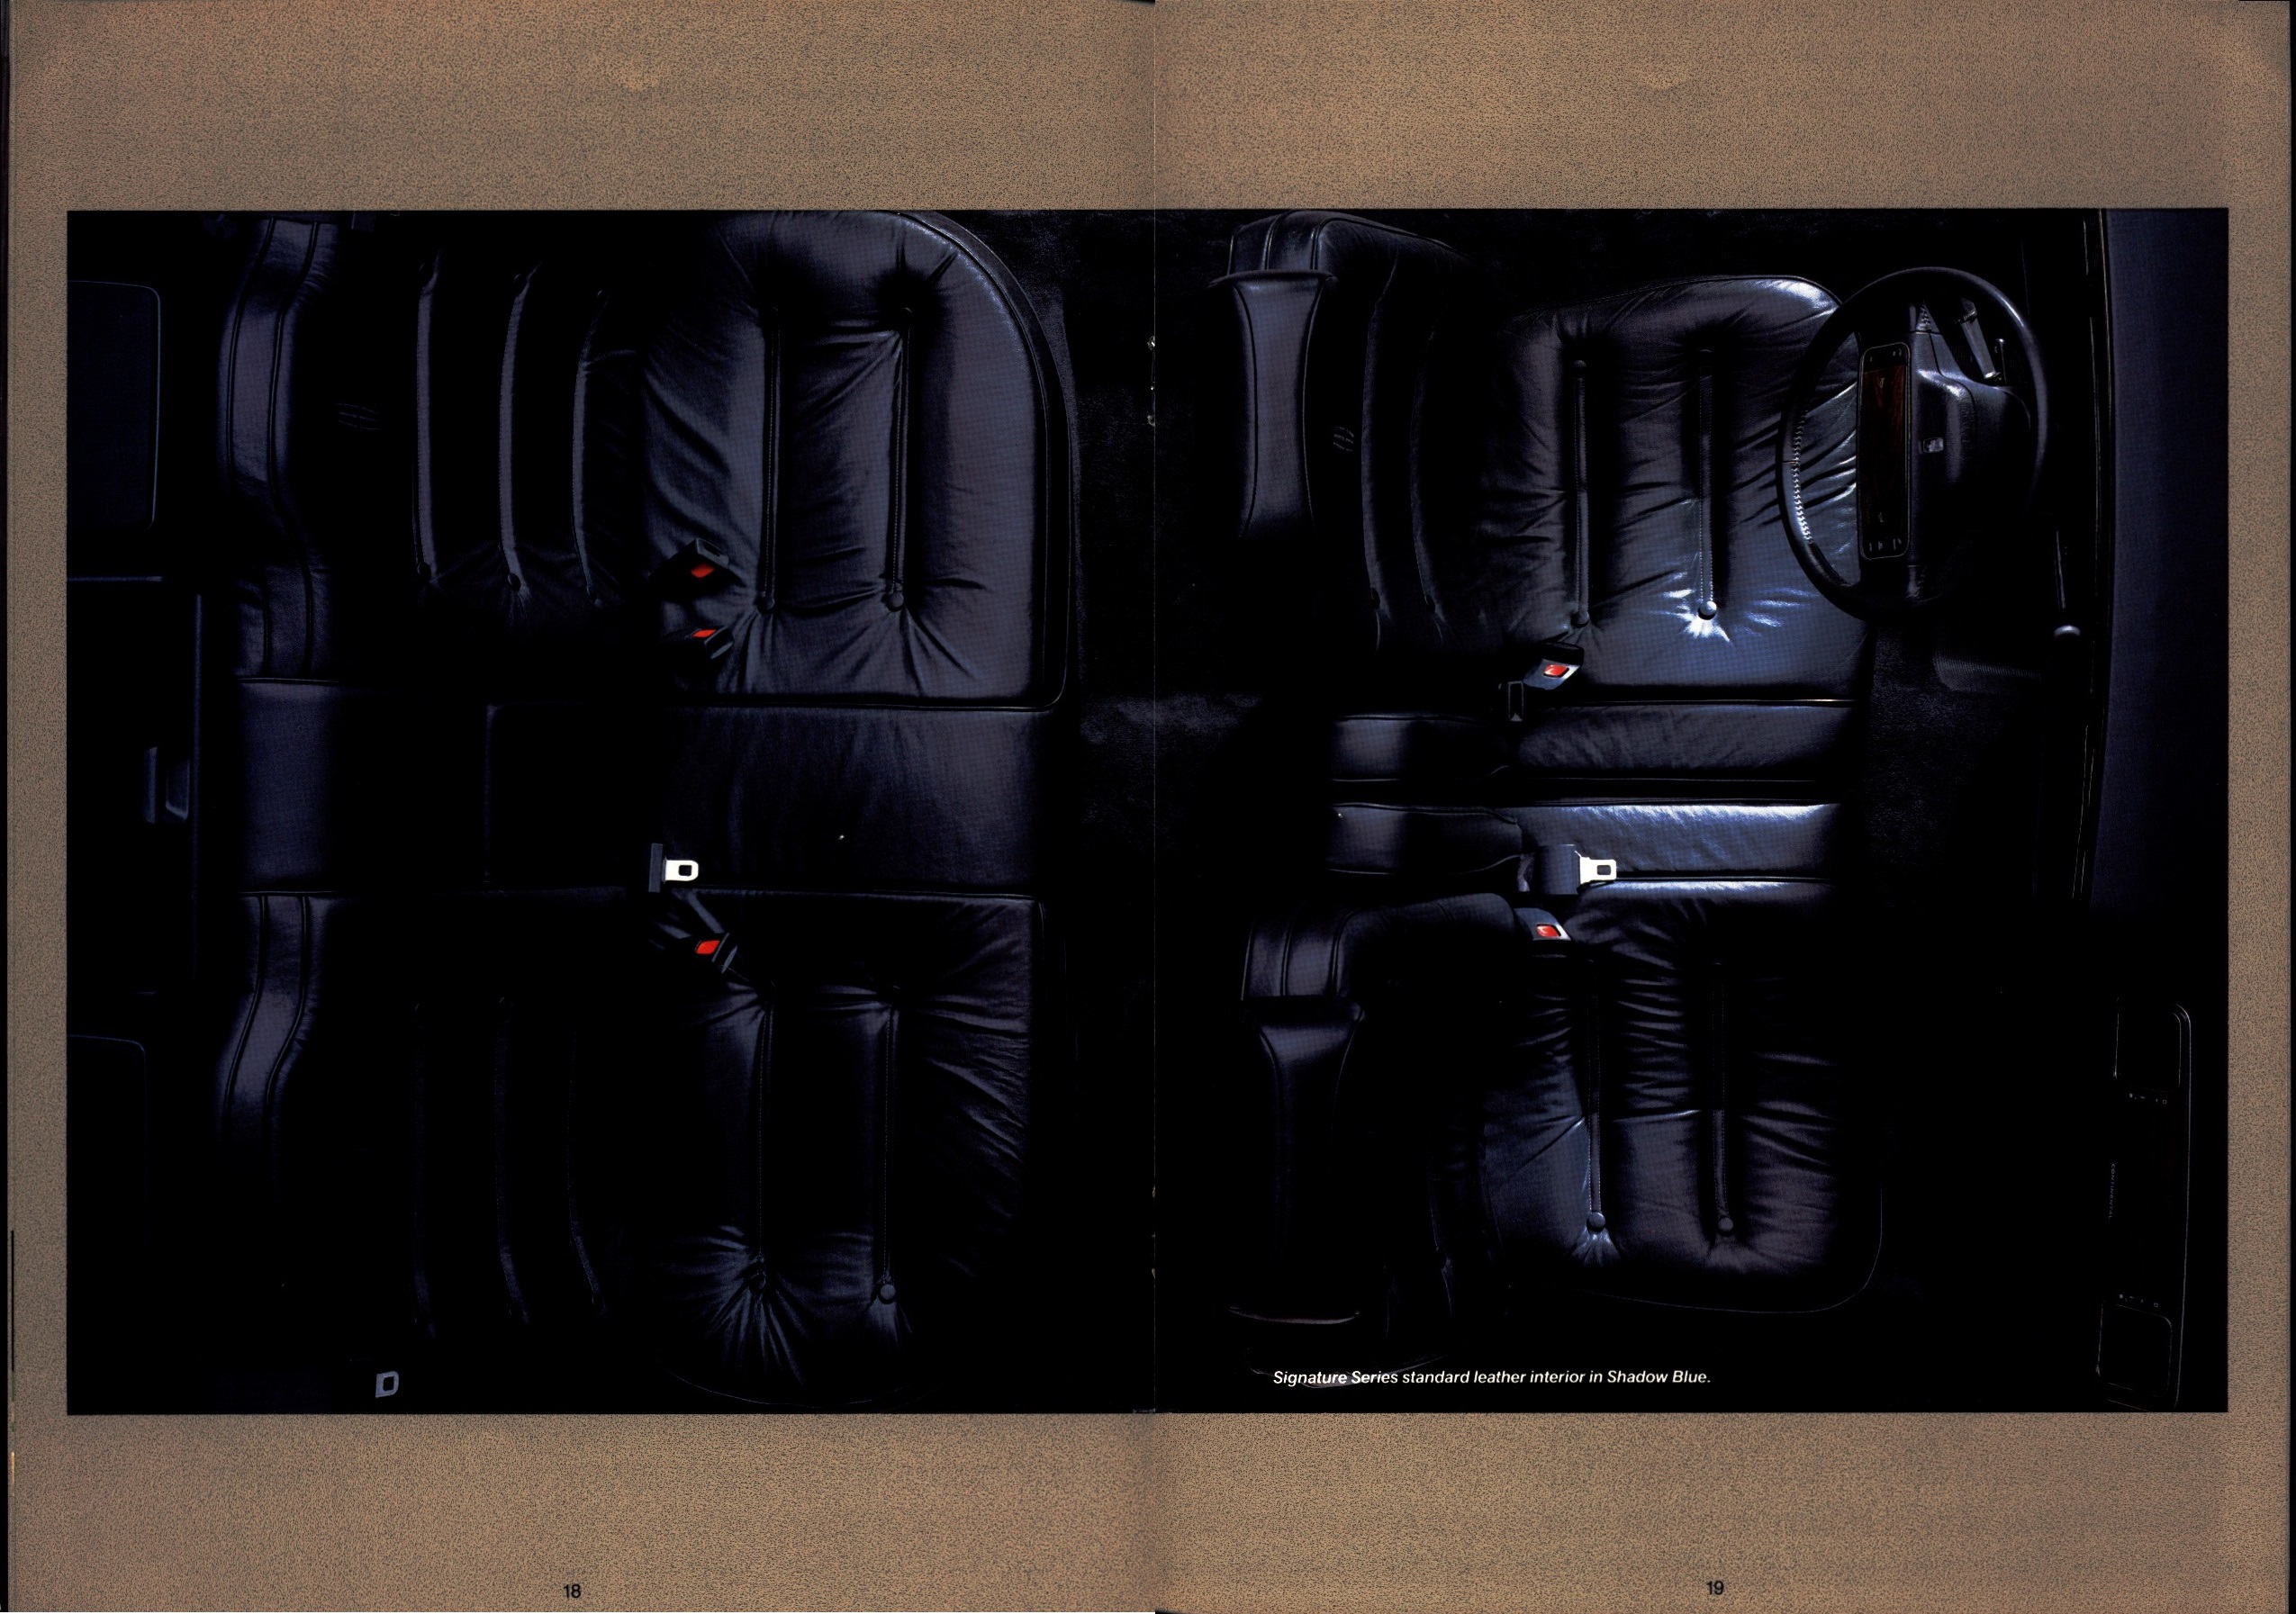 1988 Lincoln Continental Prestige Brochure 18-19